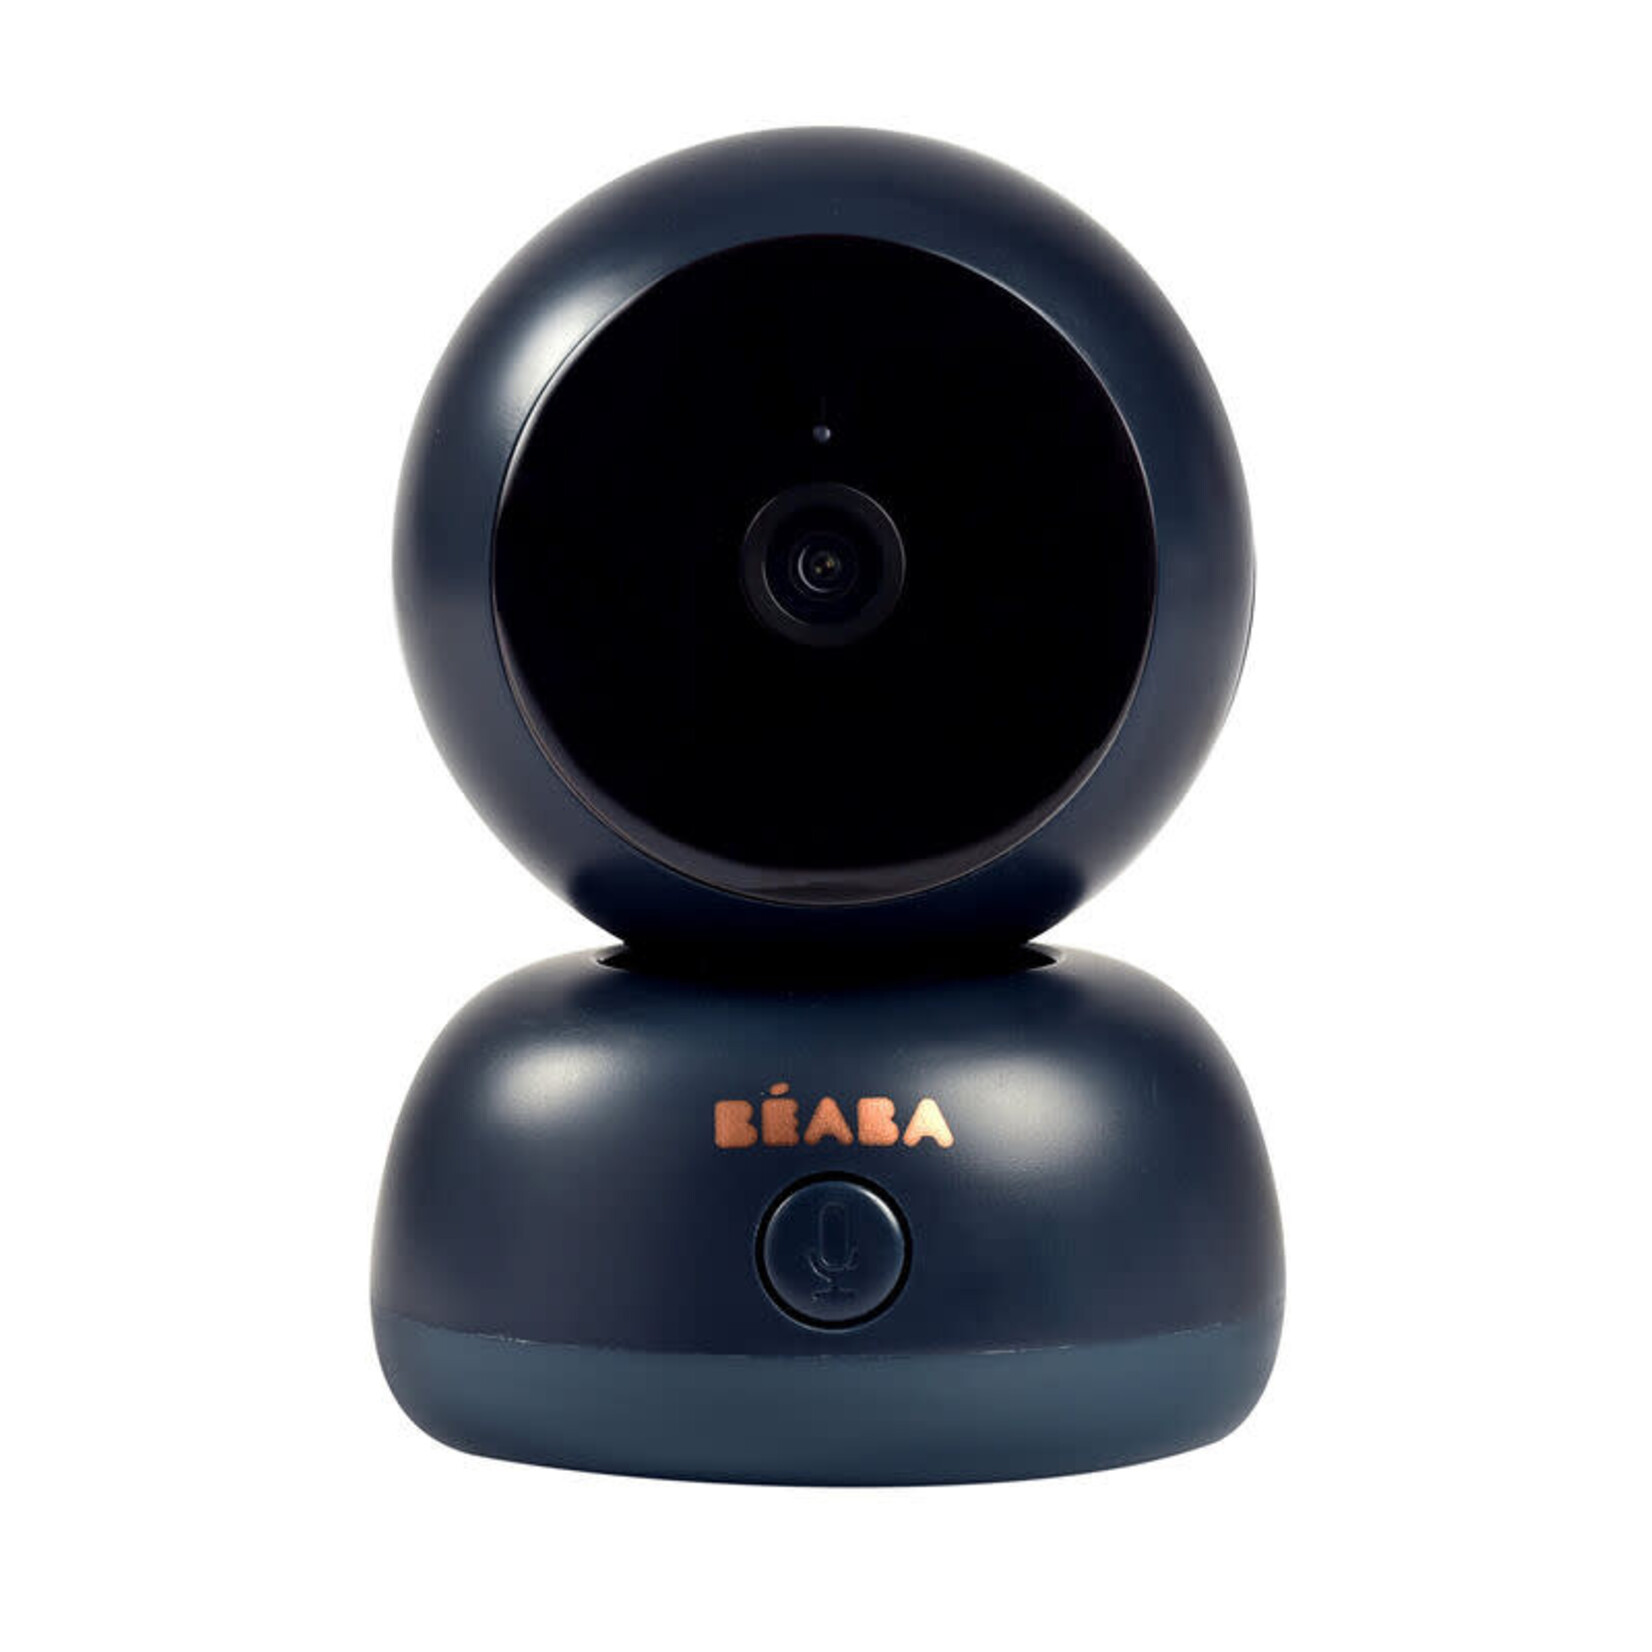 Beaba Babyphone Camera Vidéo Zen Premium Beaba 2 en 1 Ecran et Appli